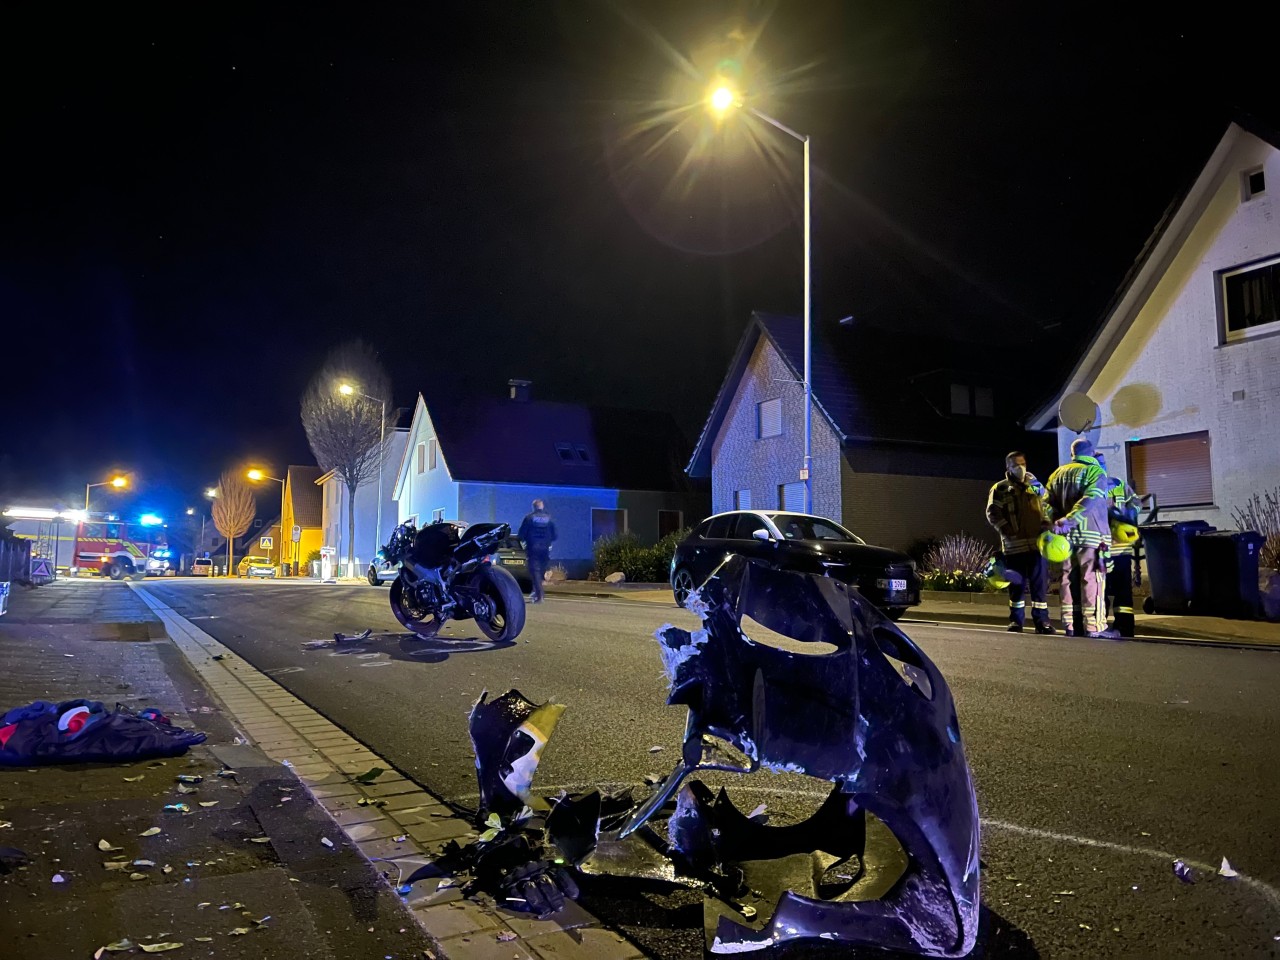 NRW: Eine Mordkommission ermittelt nach einem tödlichen Motorrad-Unfall in Hiddenhausen im Kreis Herford.